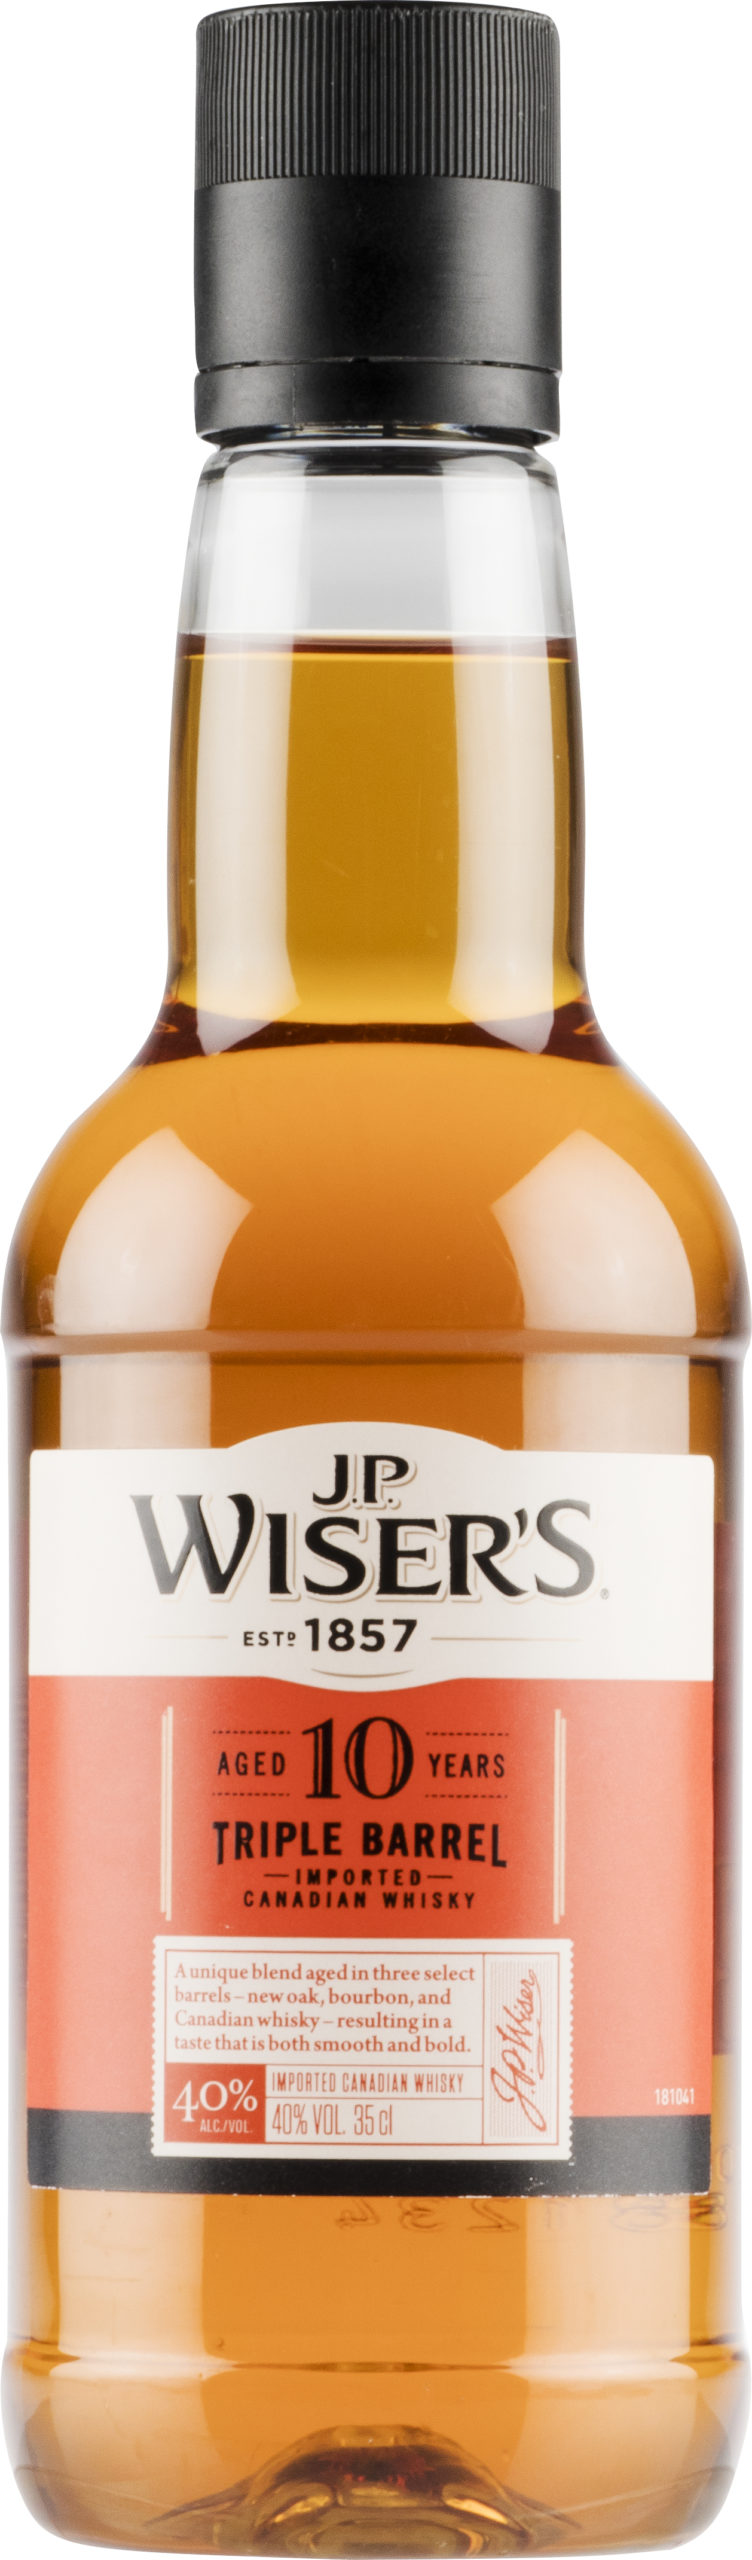 J.P. Wiser’s 10 Year Old Triple Barrel plastic bottle